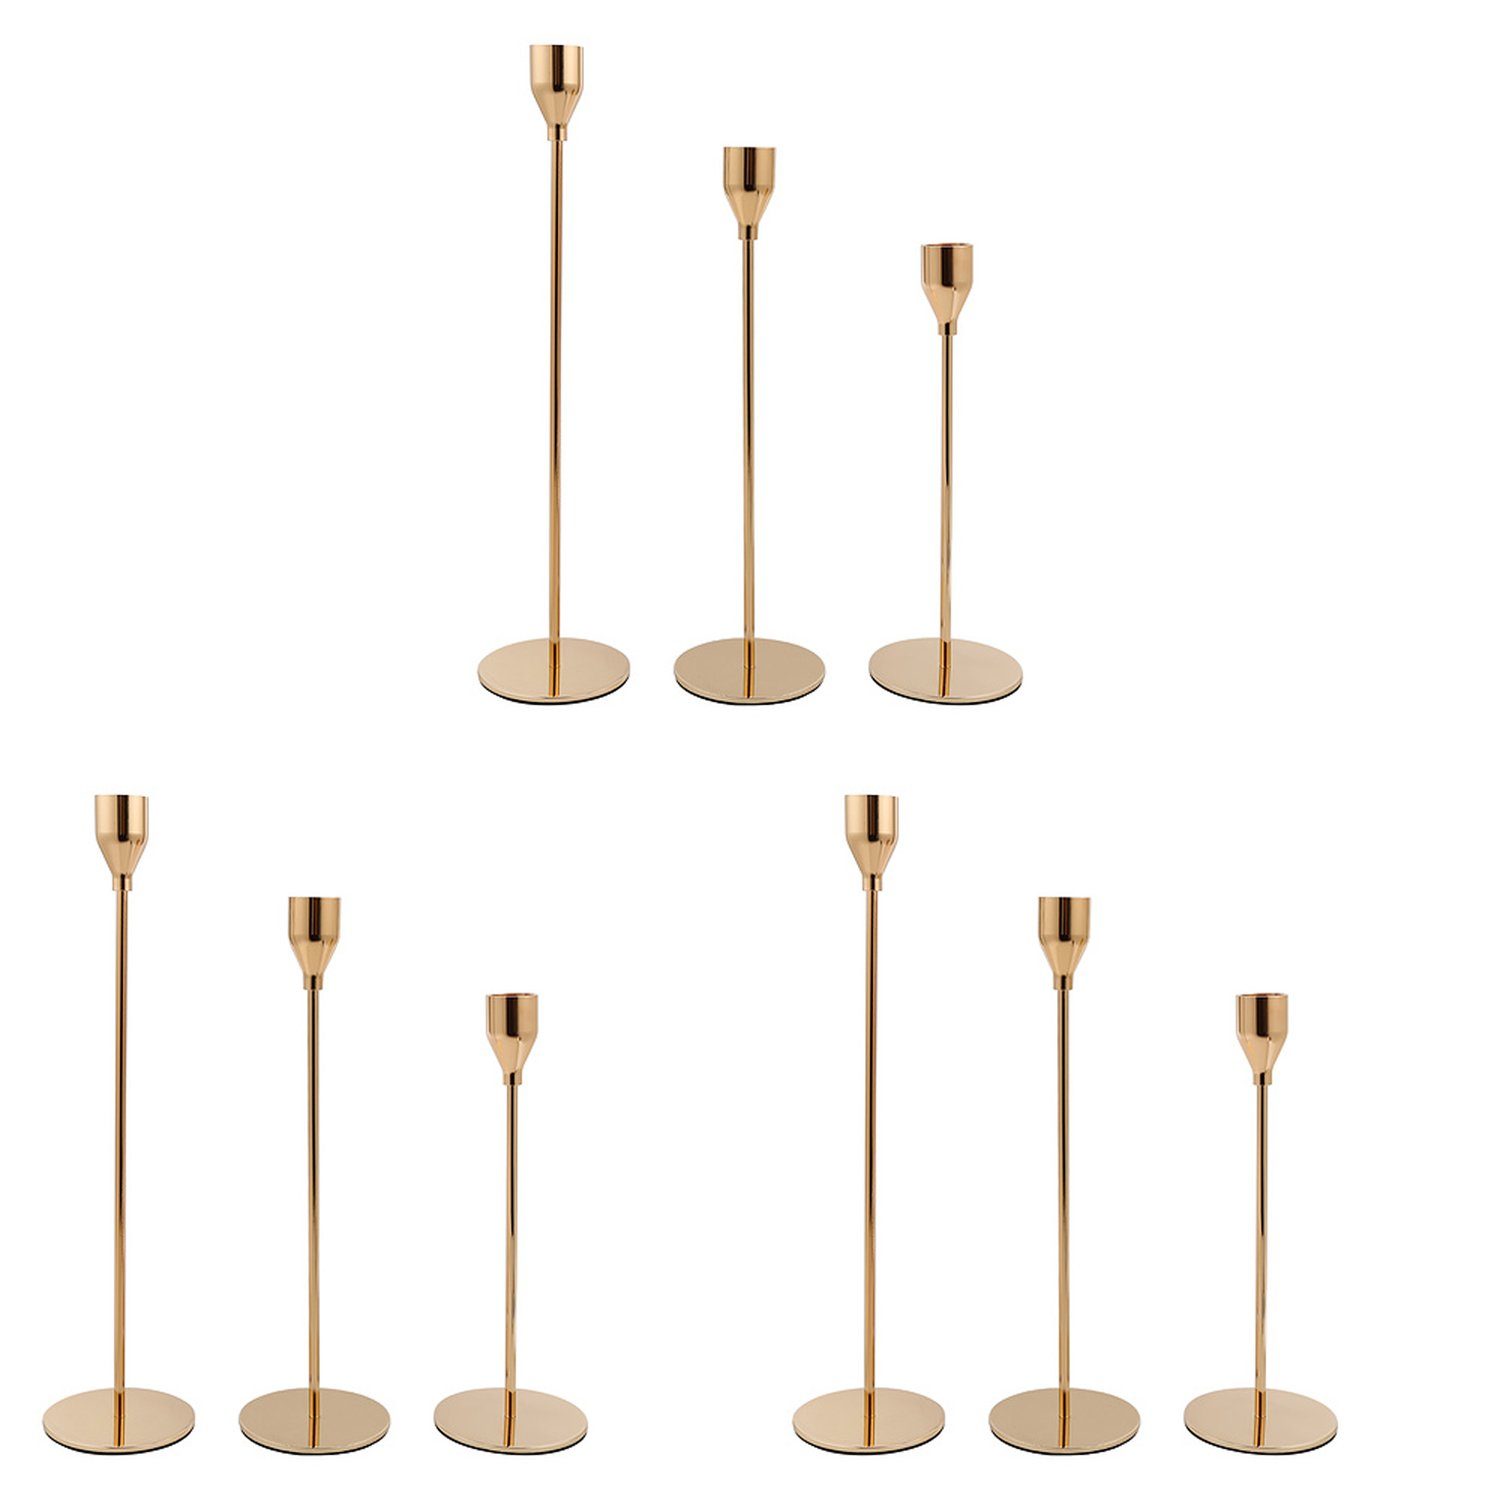 Gimisgu Kerzenständer 9x Kerzenständer für Kerzen mit einer Dicke von bis zu 2 cm gold | Kerzenständer